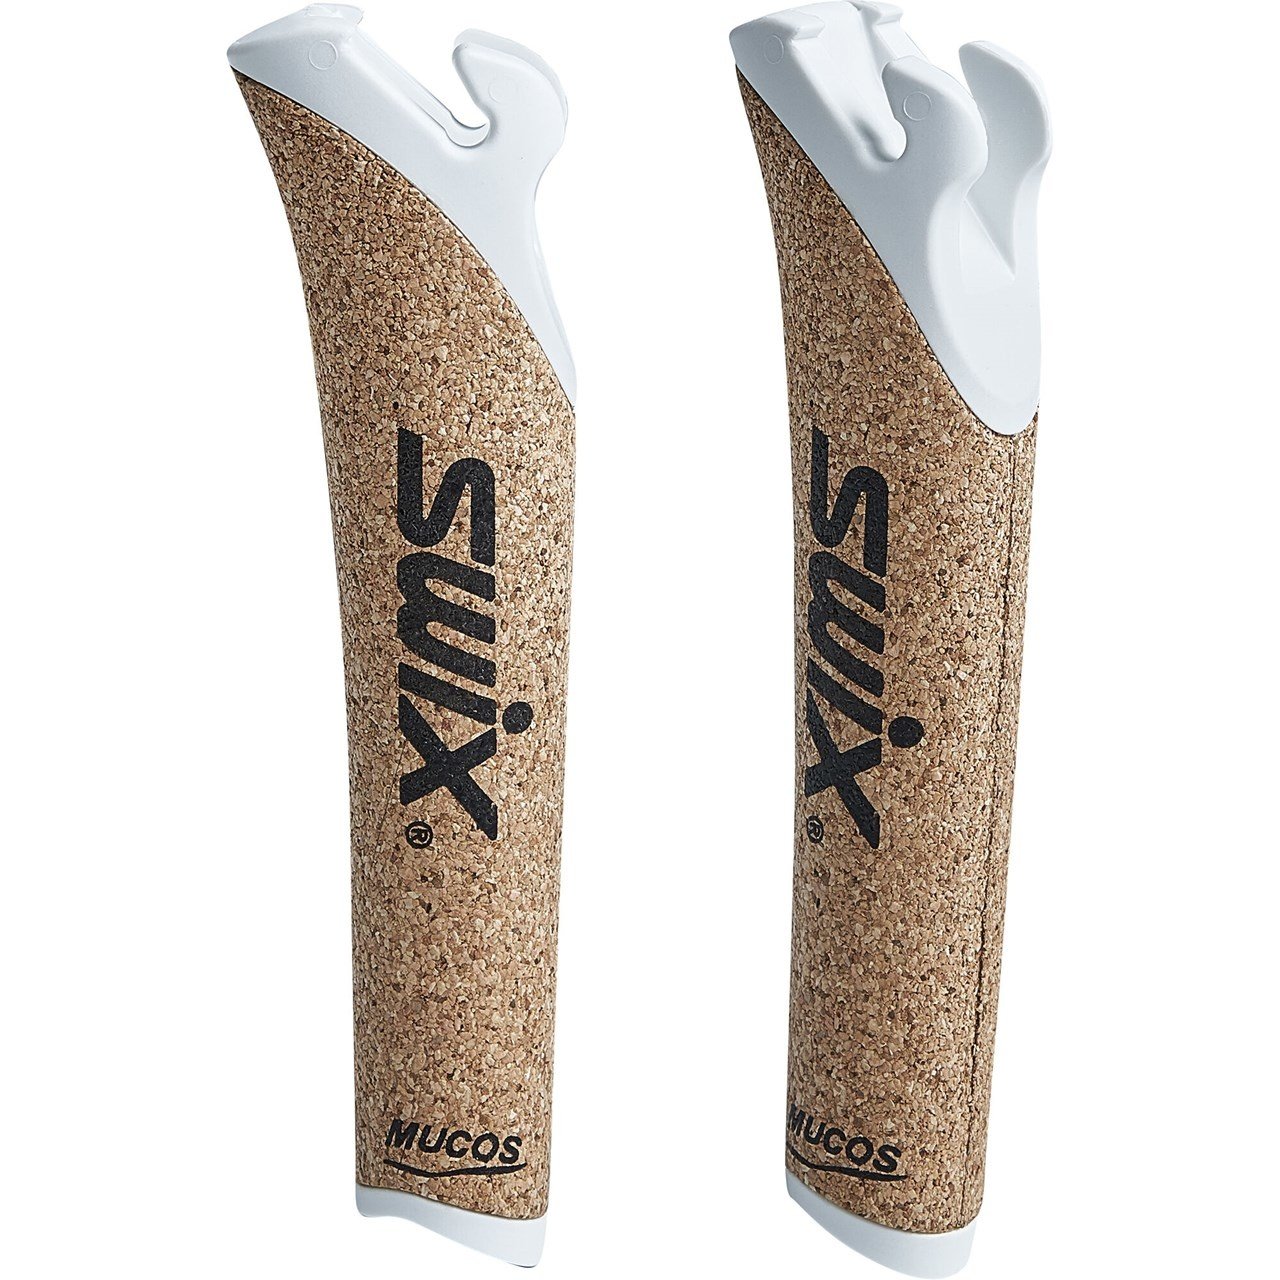 クロスカントリースキー ストック SWIX トライアック3.0[162.5cm] - スキー